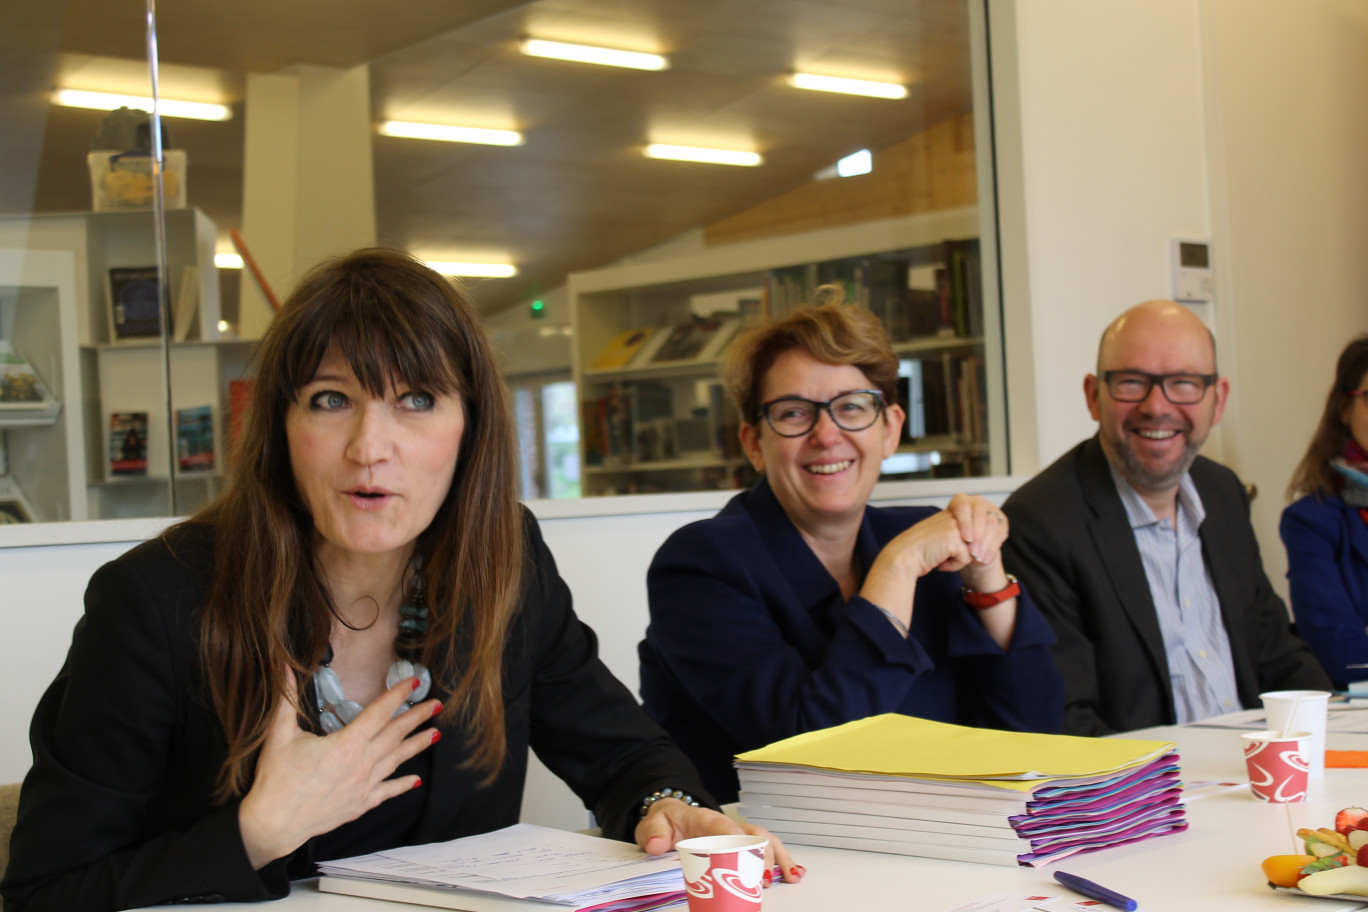 De gauche à droite, Gaëlle Velay, directrice régionale, Brigitte Louis, directrice déléguée Lille,et Eric Naepels, responsable des affaires régionales.